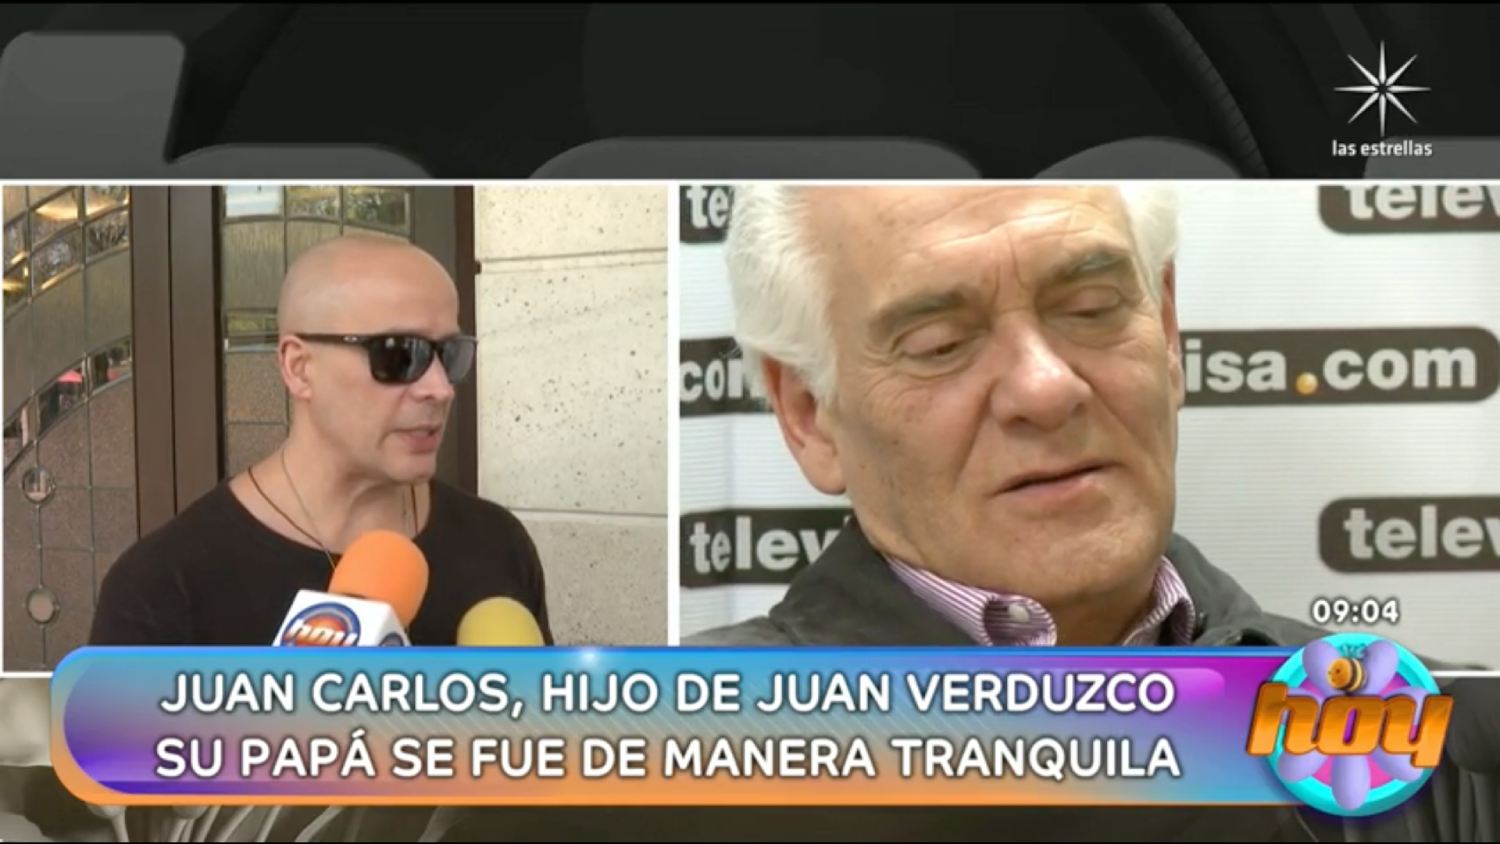 Juan Carlos Verduzco expuso que su papá se fue en paz al dormir.